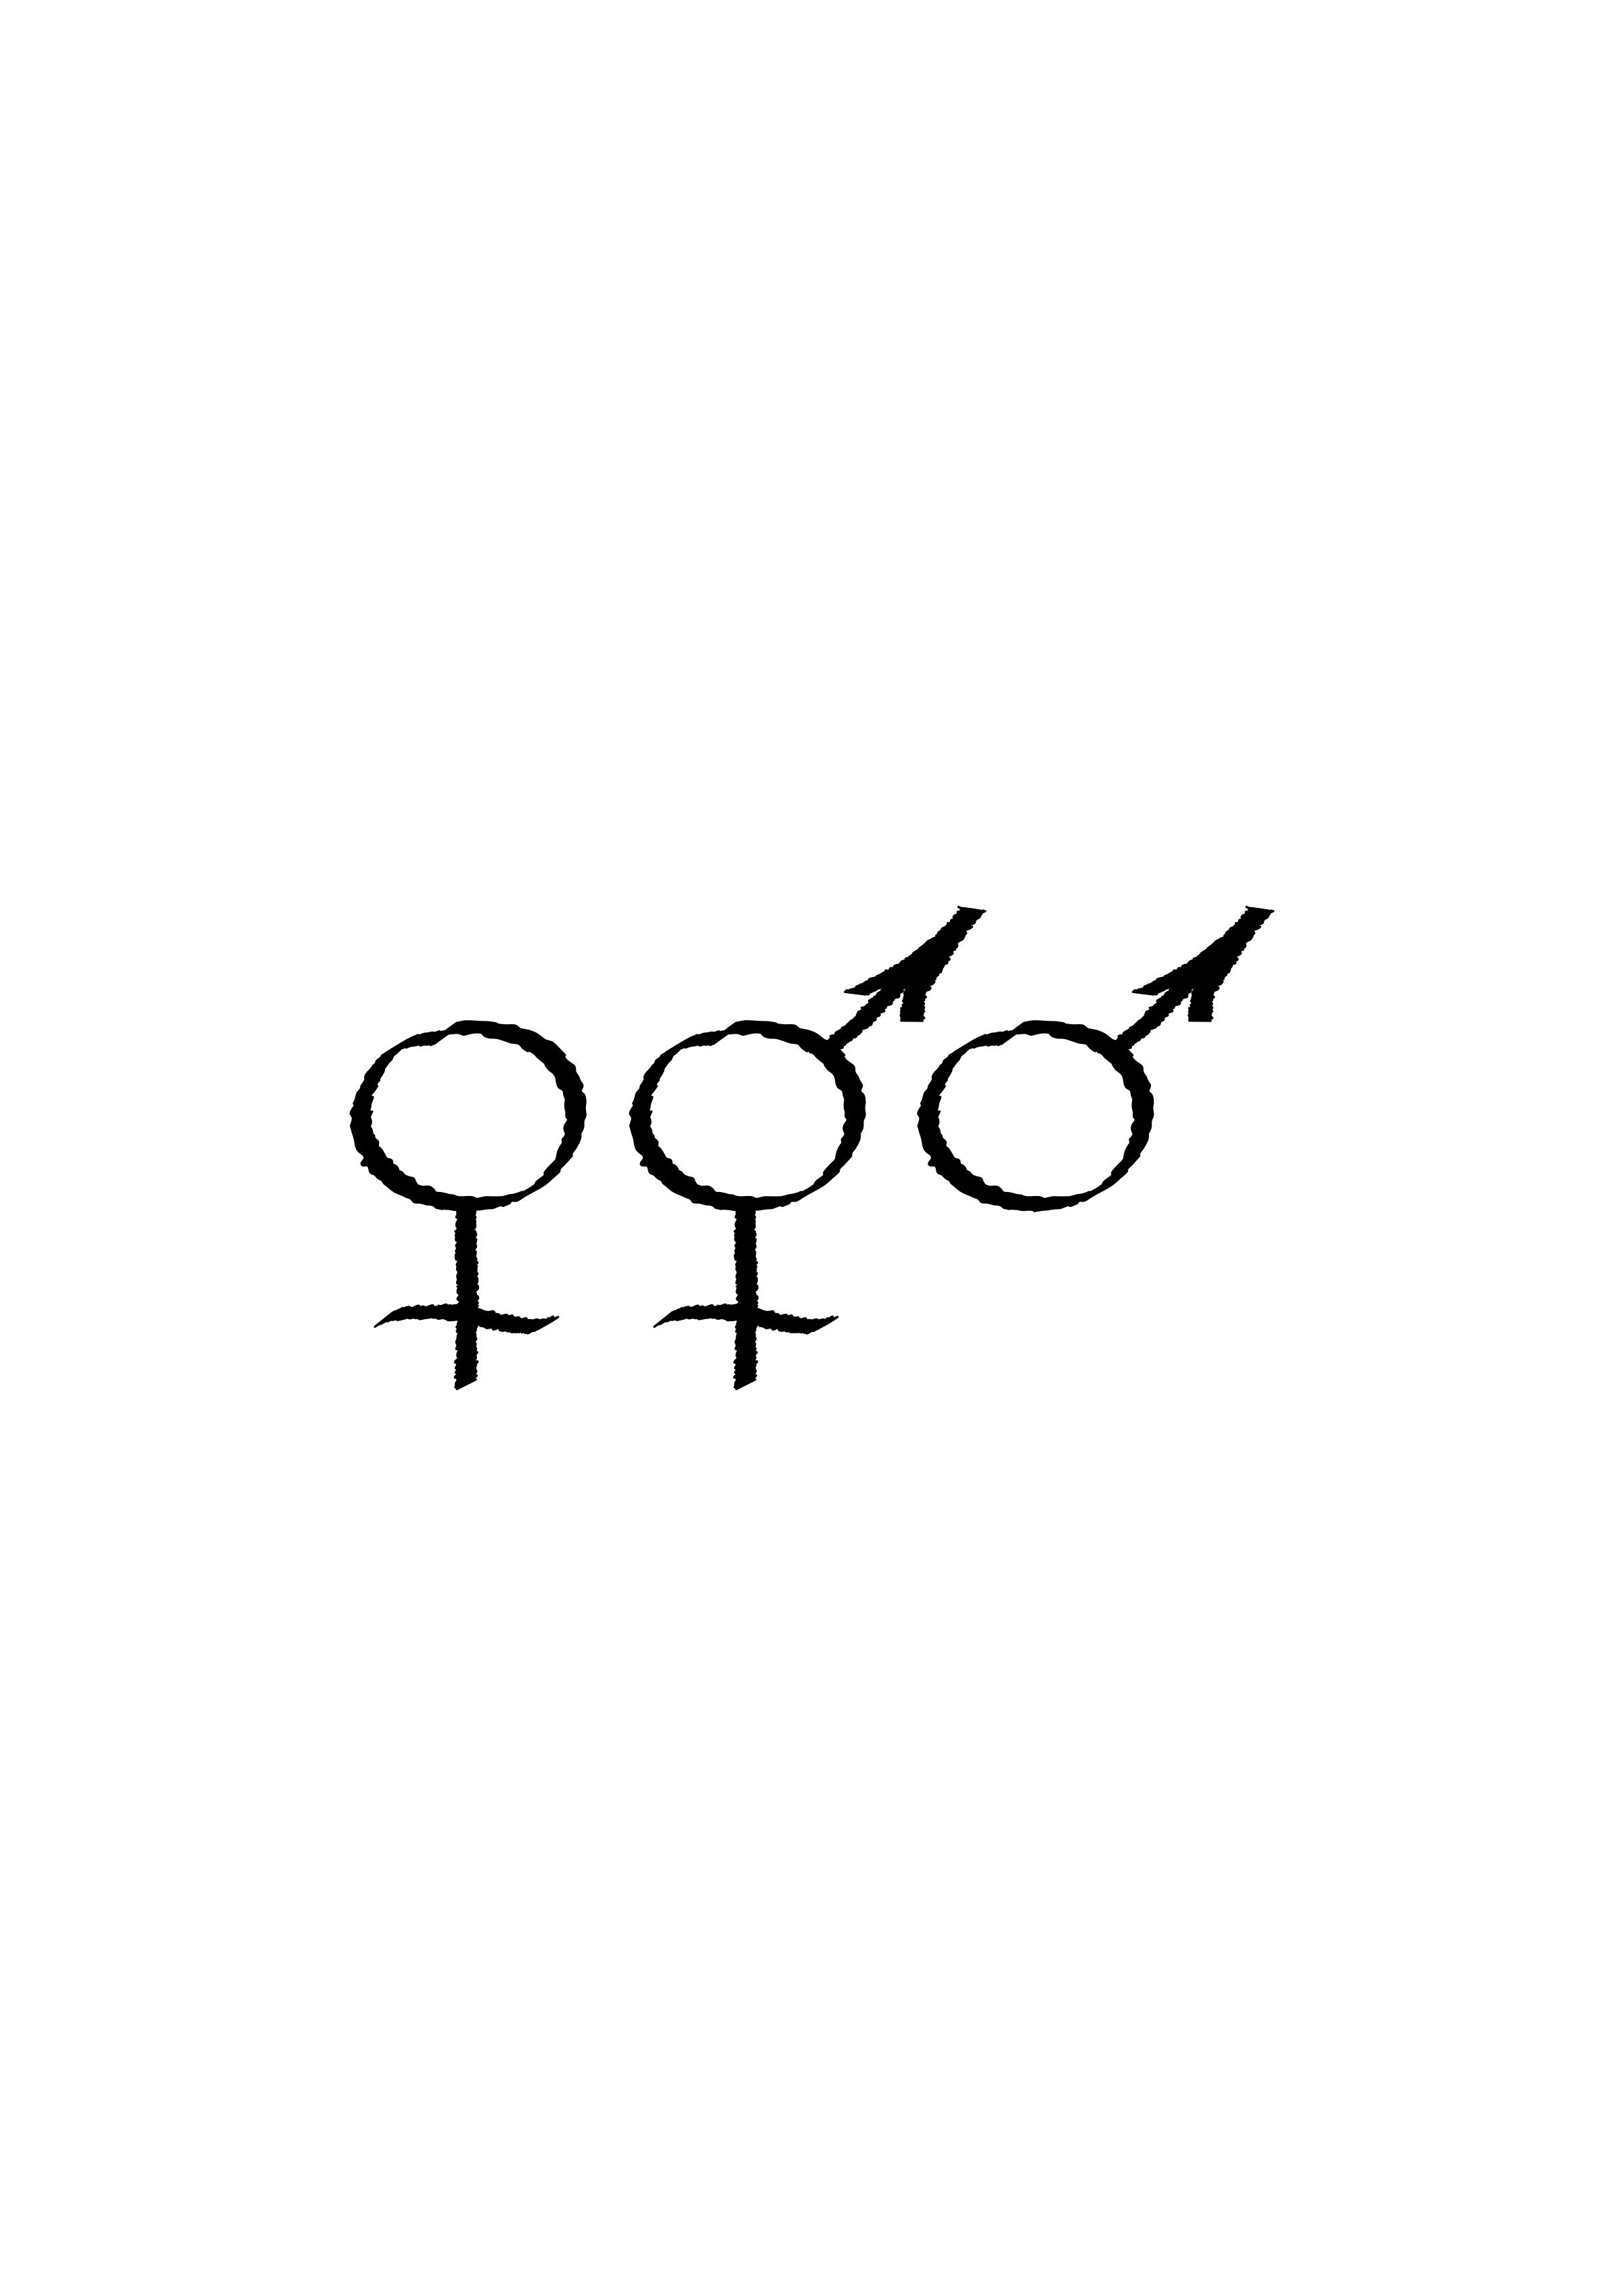 Female / Male Symbols png